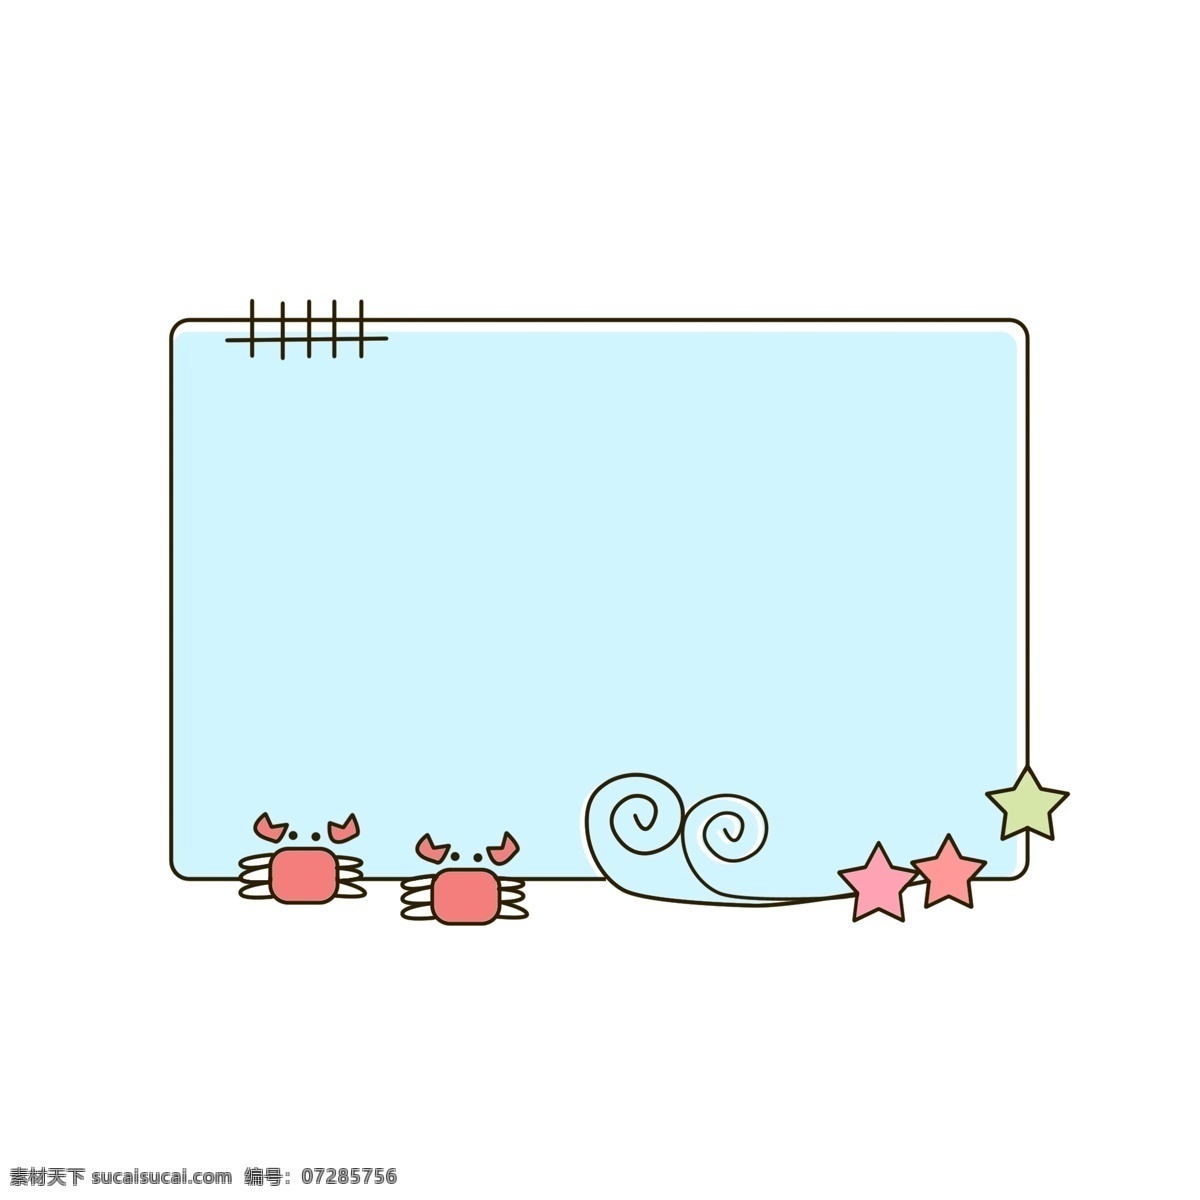 手绘 卡通 清新 海洋 边框 手绘边框 卡通边框 清新边框 对话框 可爱边框 海洋边框 小螃蟹装饰 海星装饰